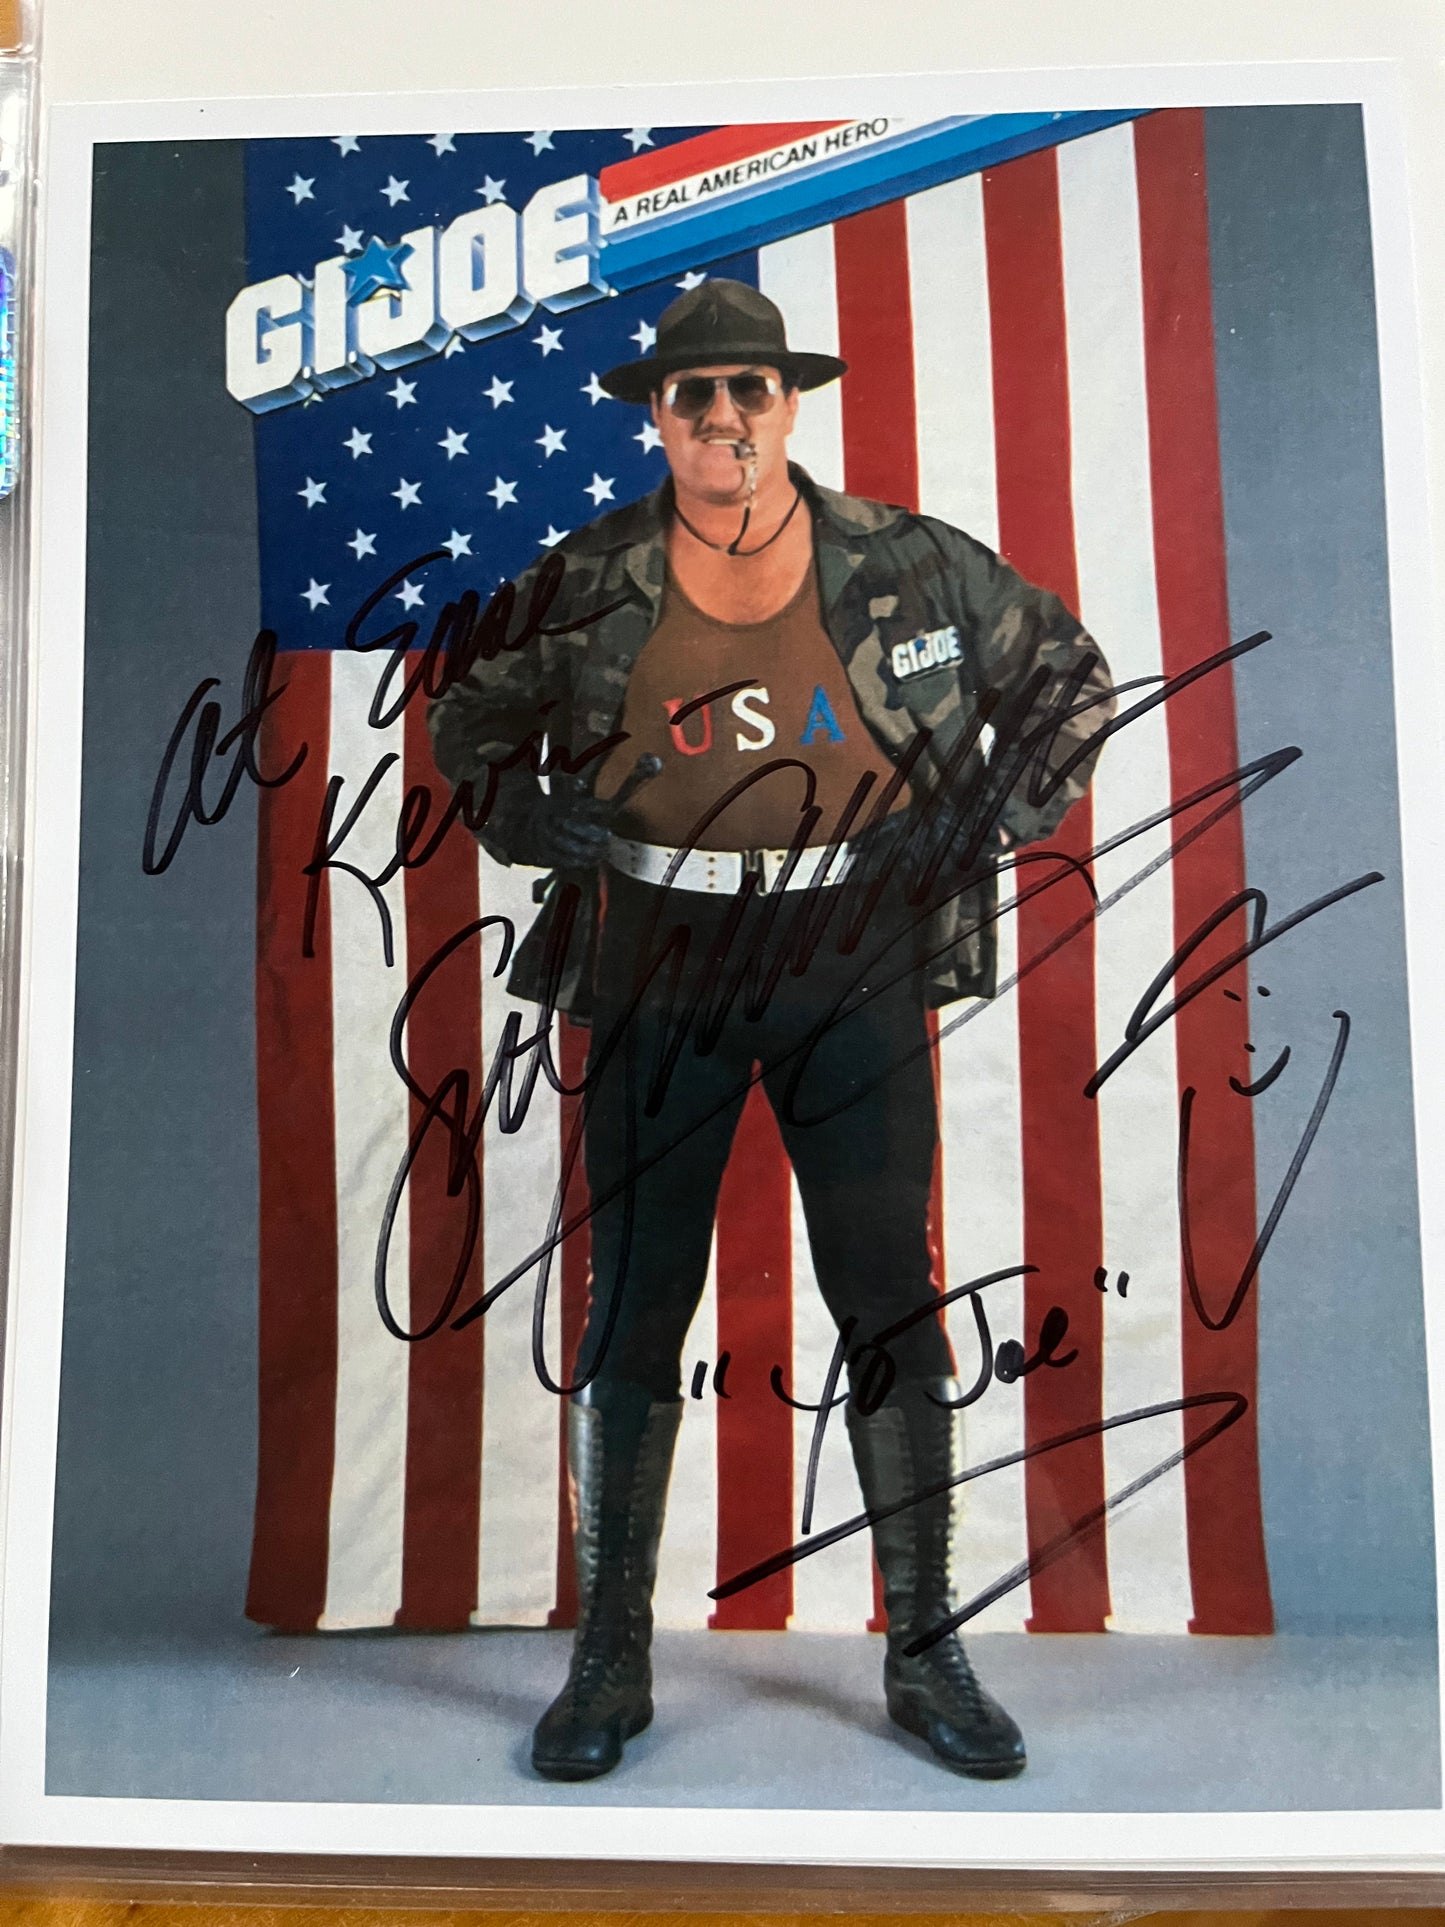 SERGEANT SLAUGHTER, a.k.a. GI JOE, WWE Wrestler, autograph